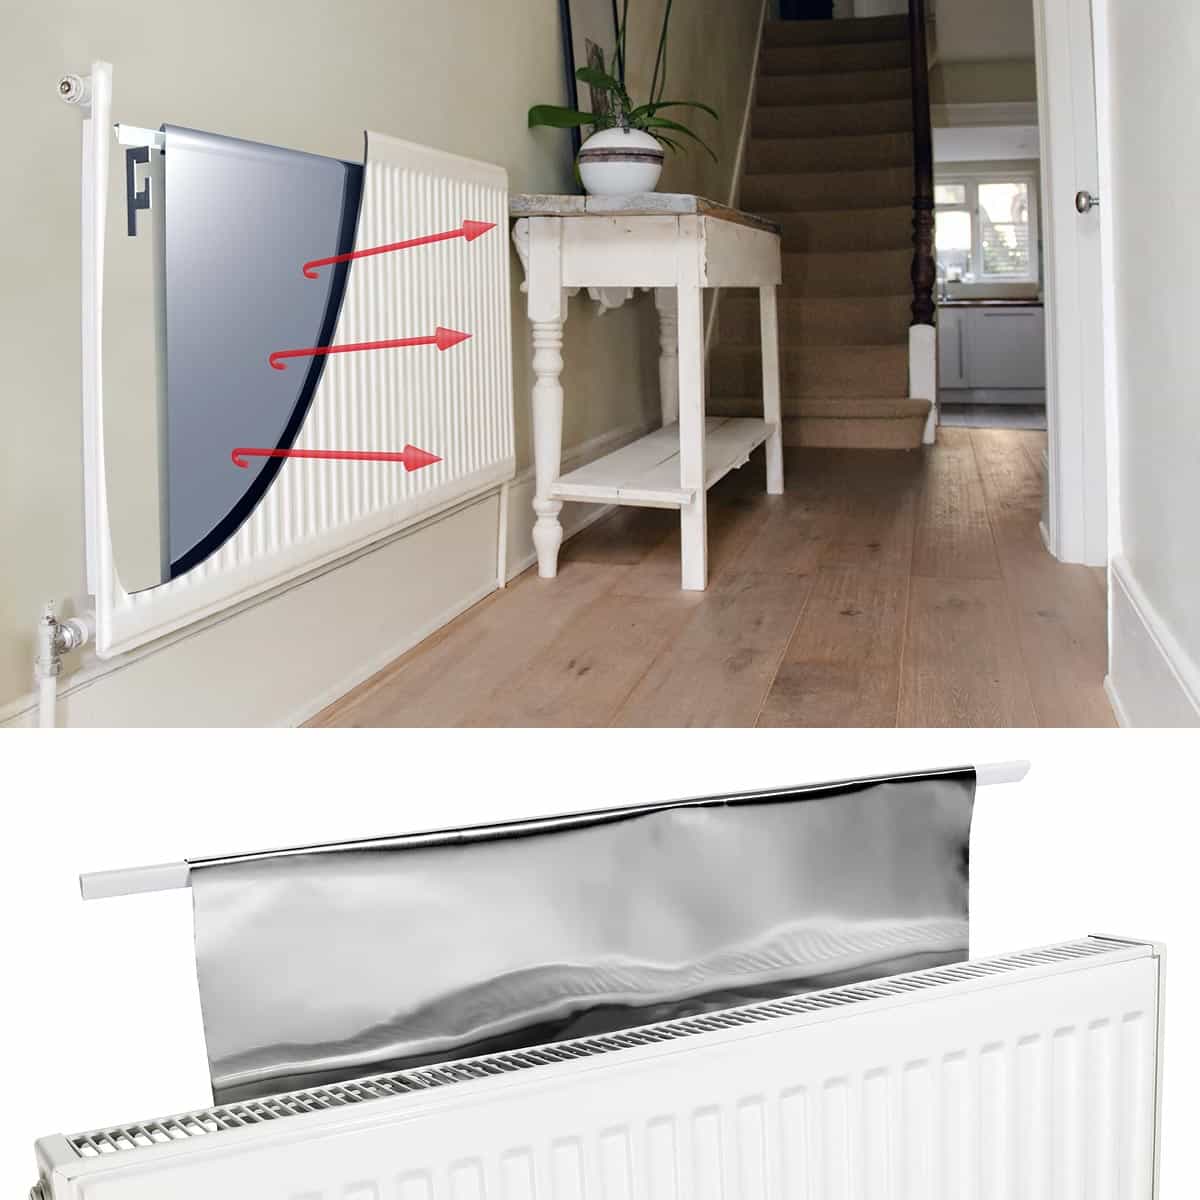 Comment poser un film isolant derrière le radiateur ?